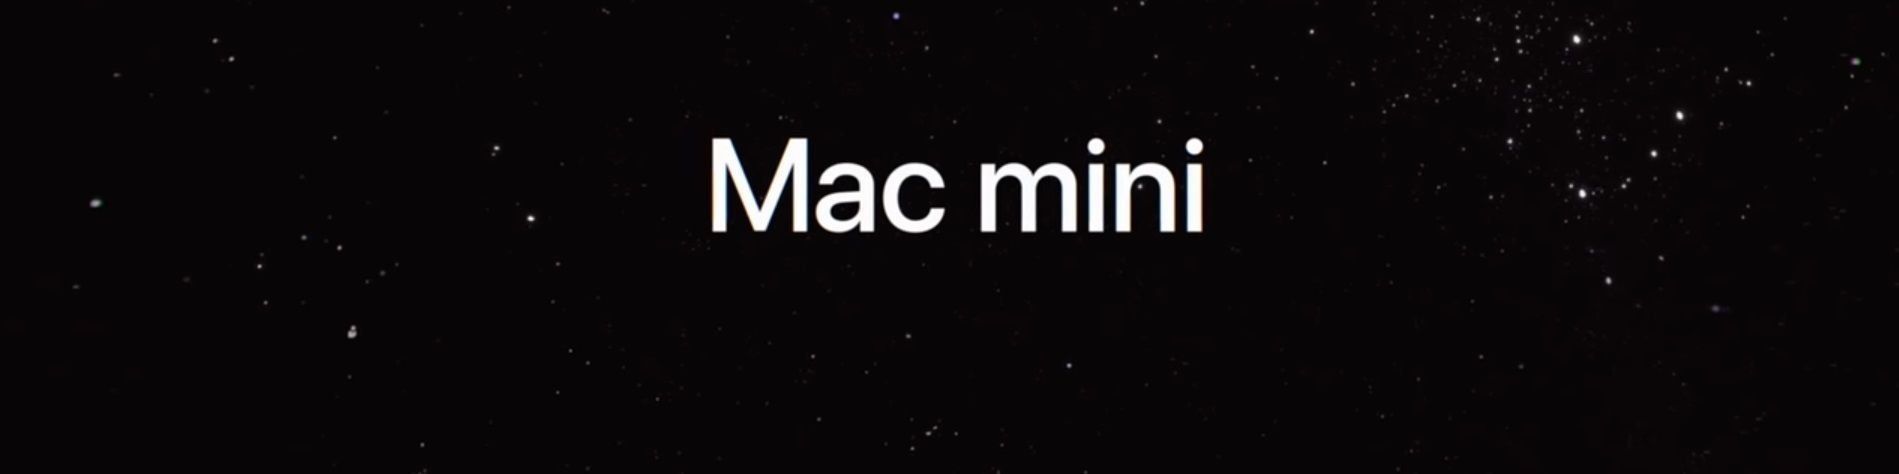 Apple Mac mini 2018 - kebaikan dan keburukan